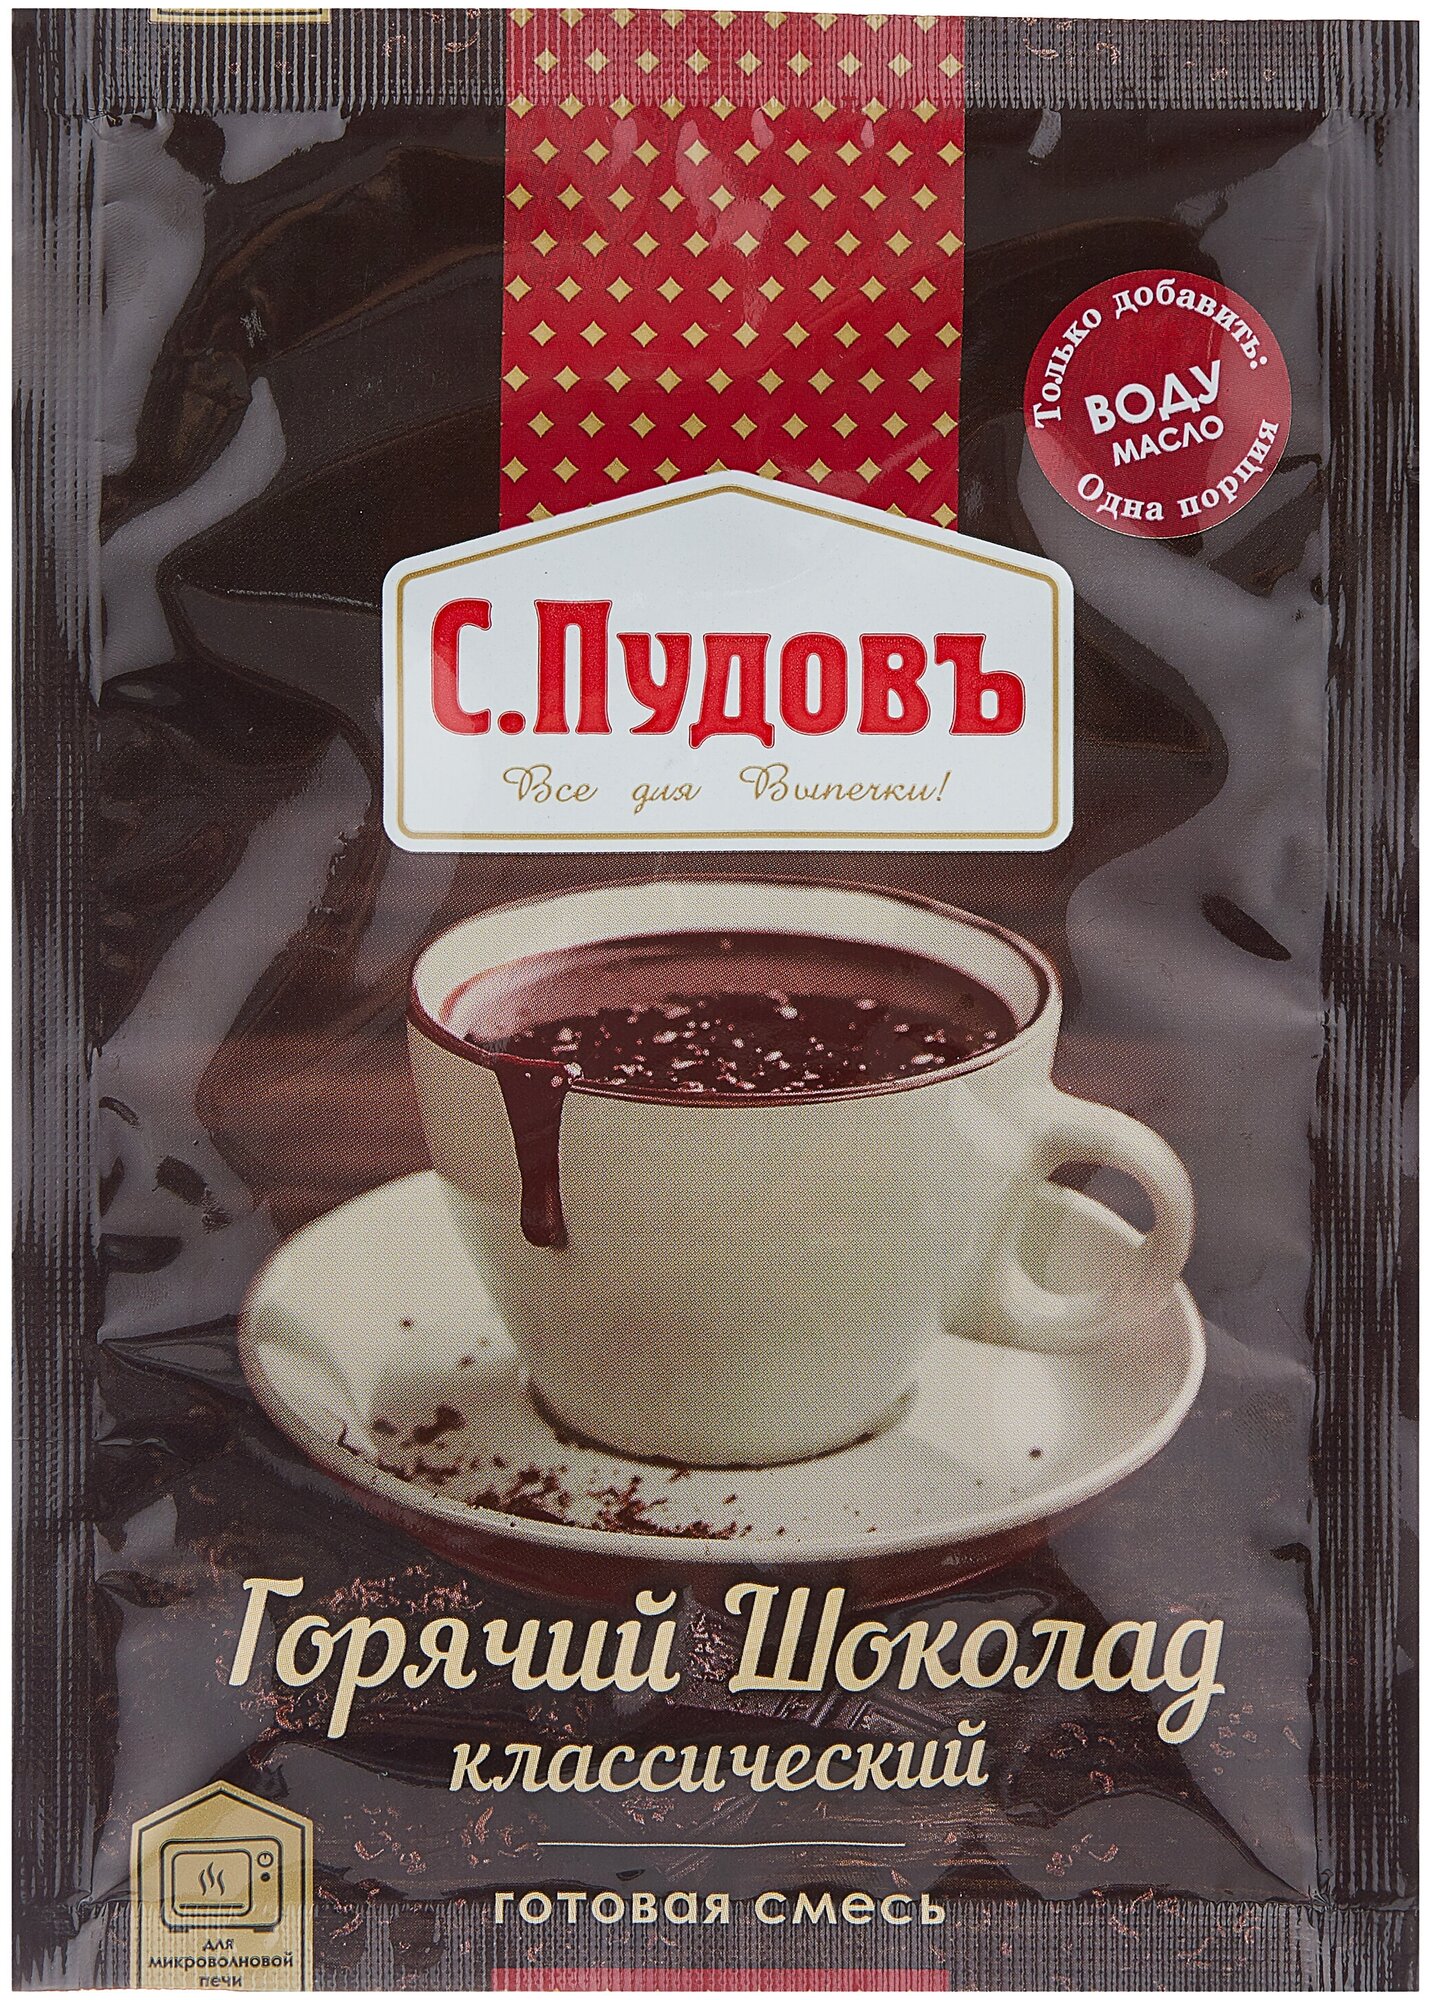 Смесь Горячий шоколад Классический, С.Пудовъ, 40 г - фотография № 5